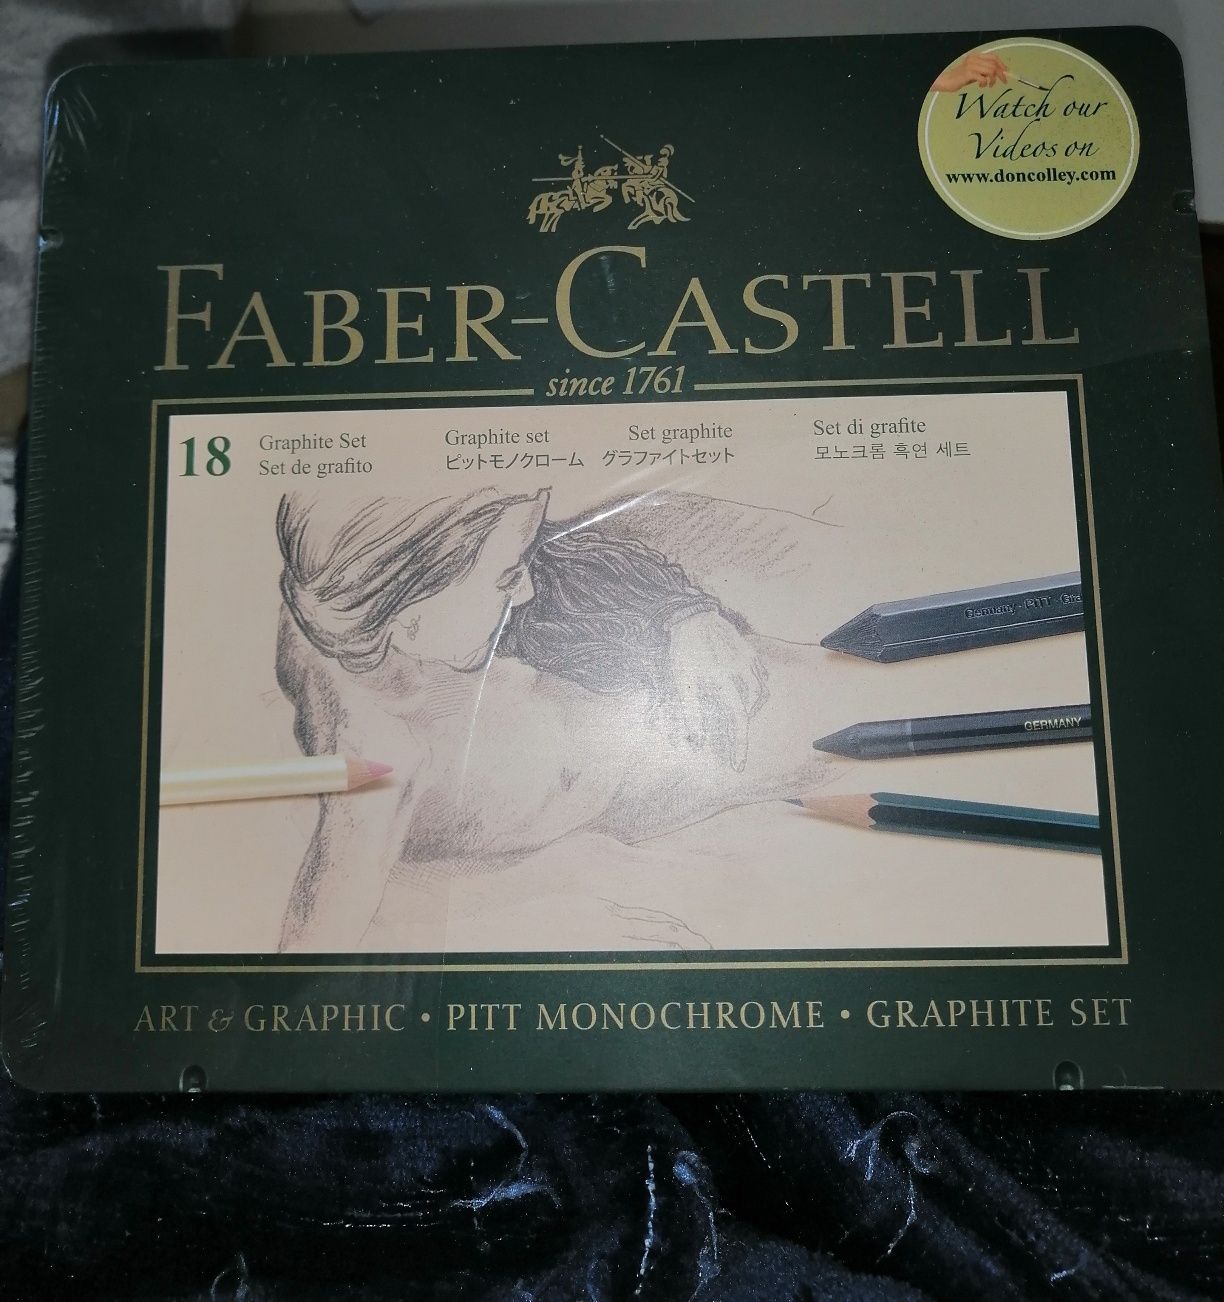 Conjunto da Faber Castel por usar, ainda com o envólucro exterior, kit